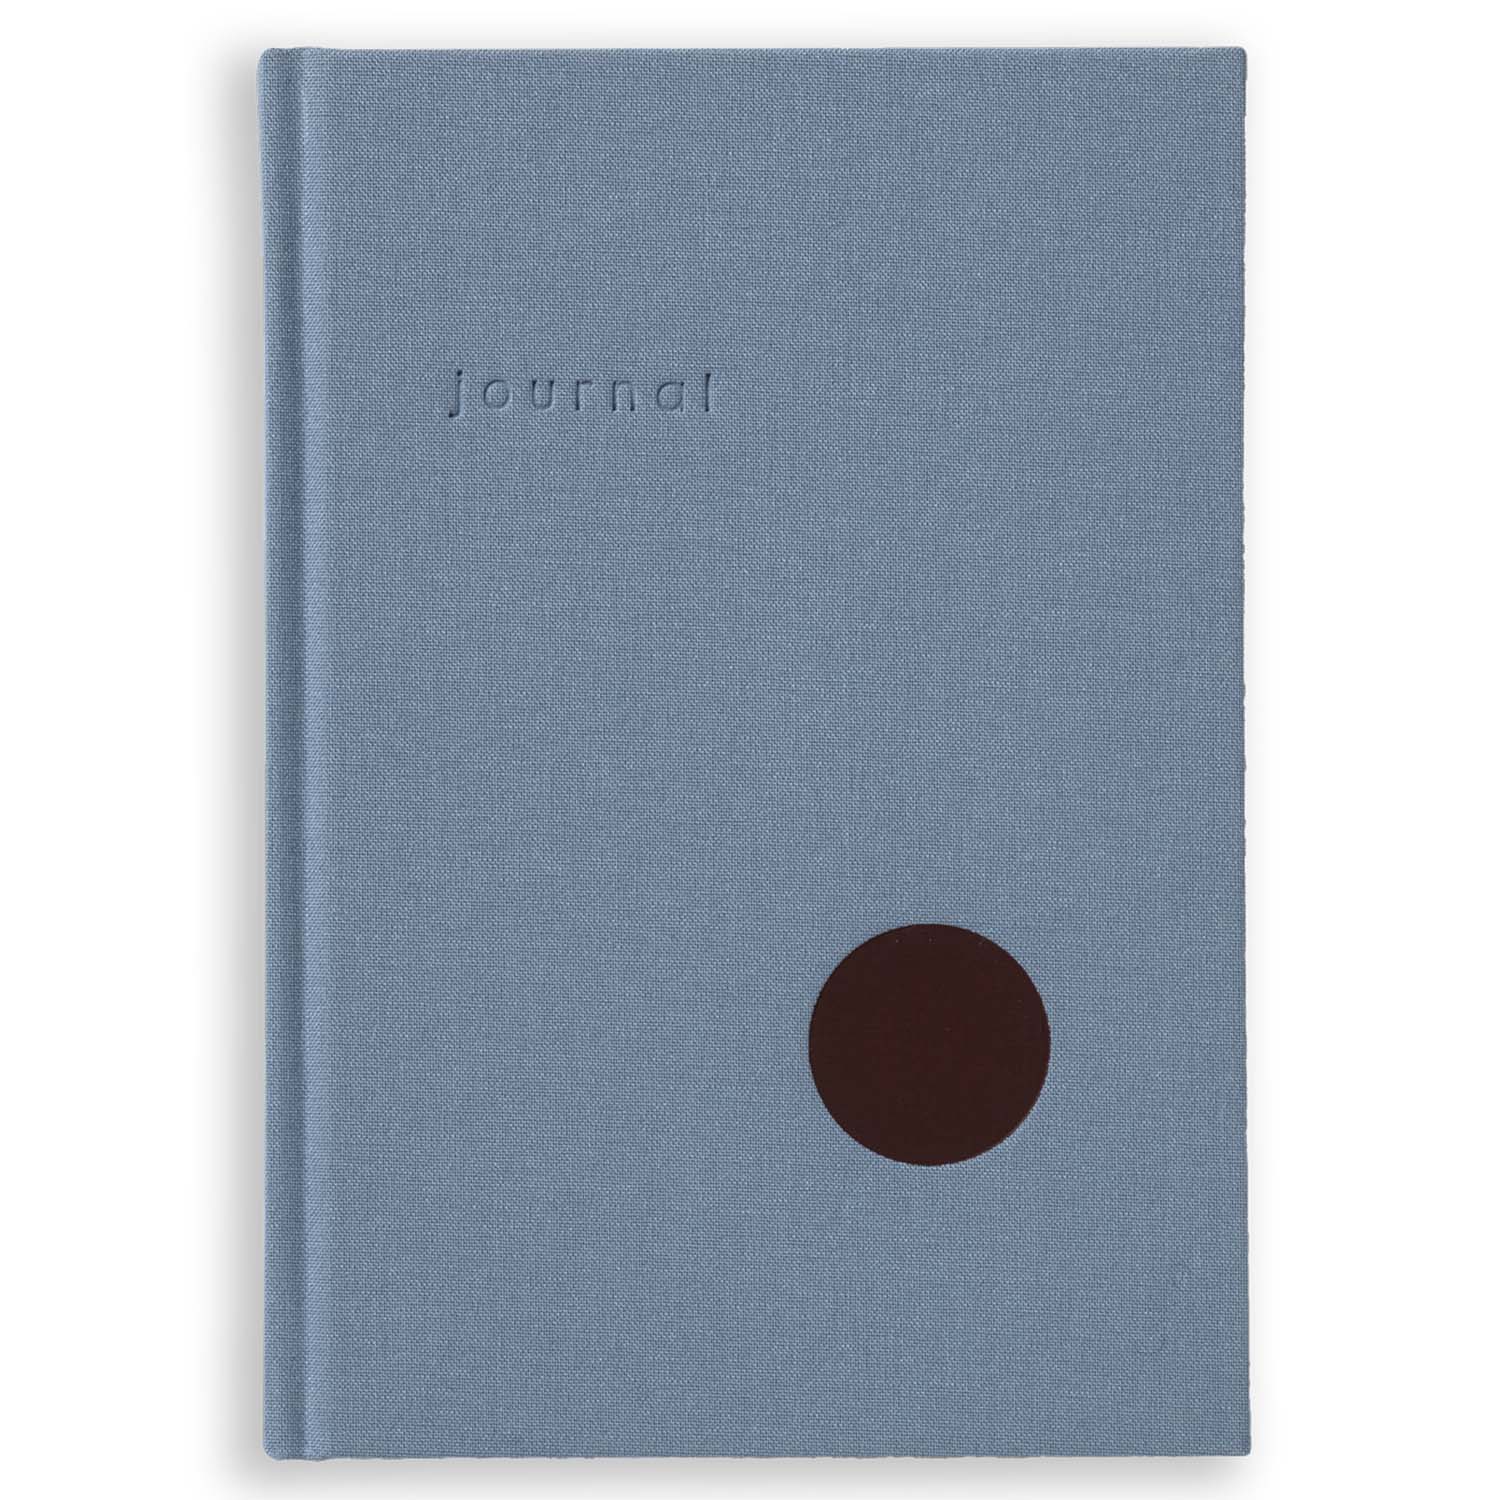 Kartotek Capenhagen - Hardcover Notebook - Journal Light Blue A5 - HN-0003